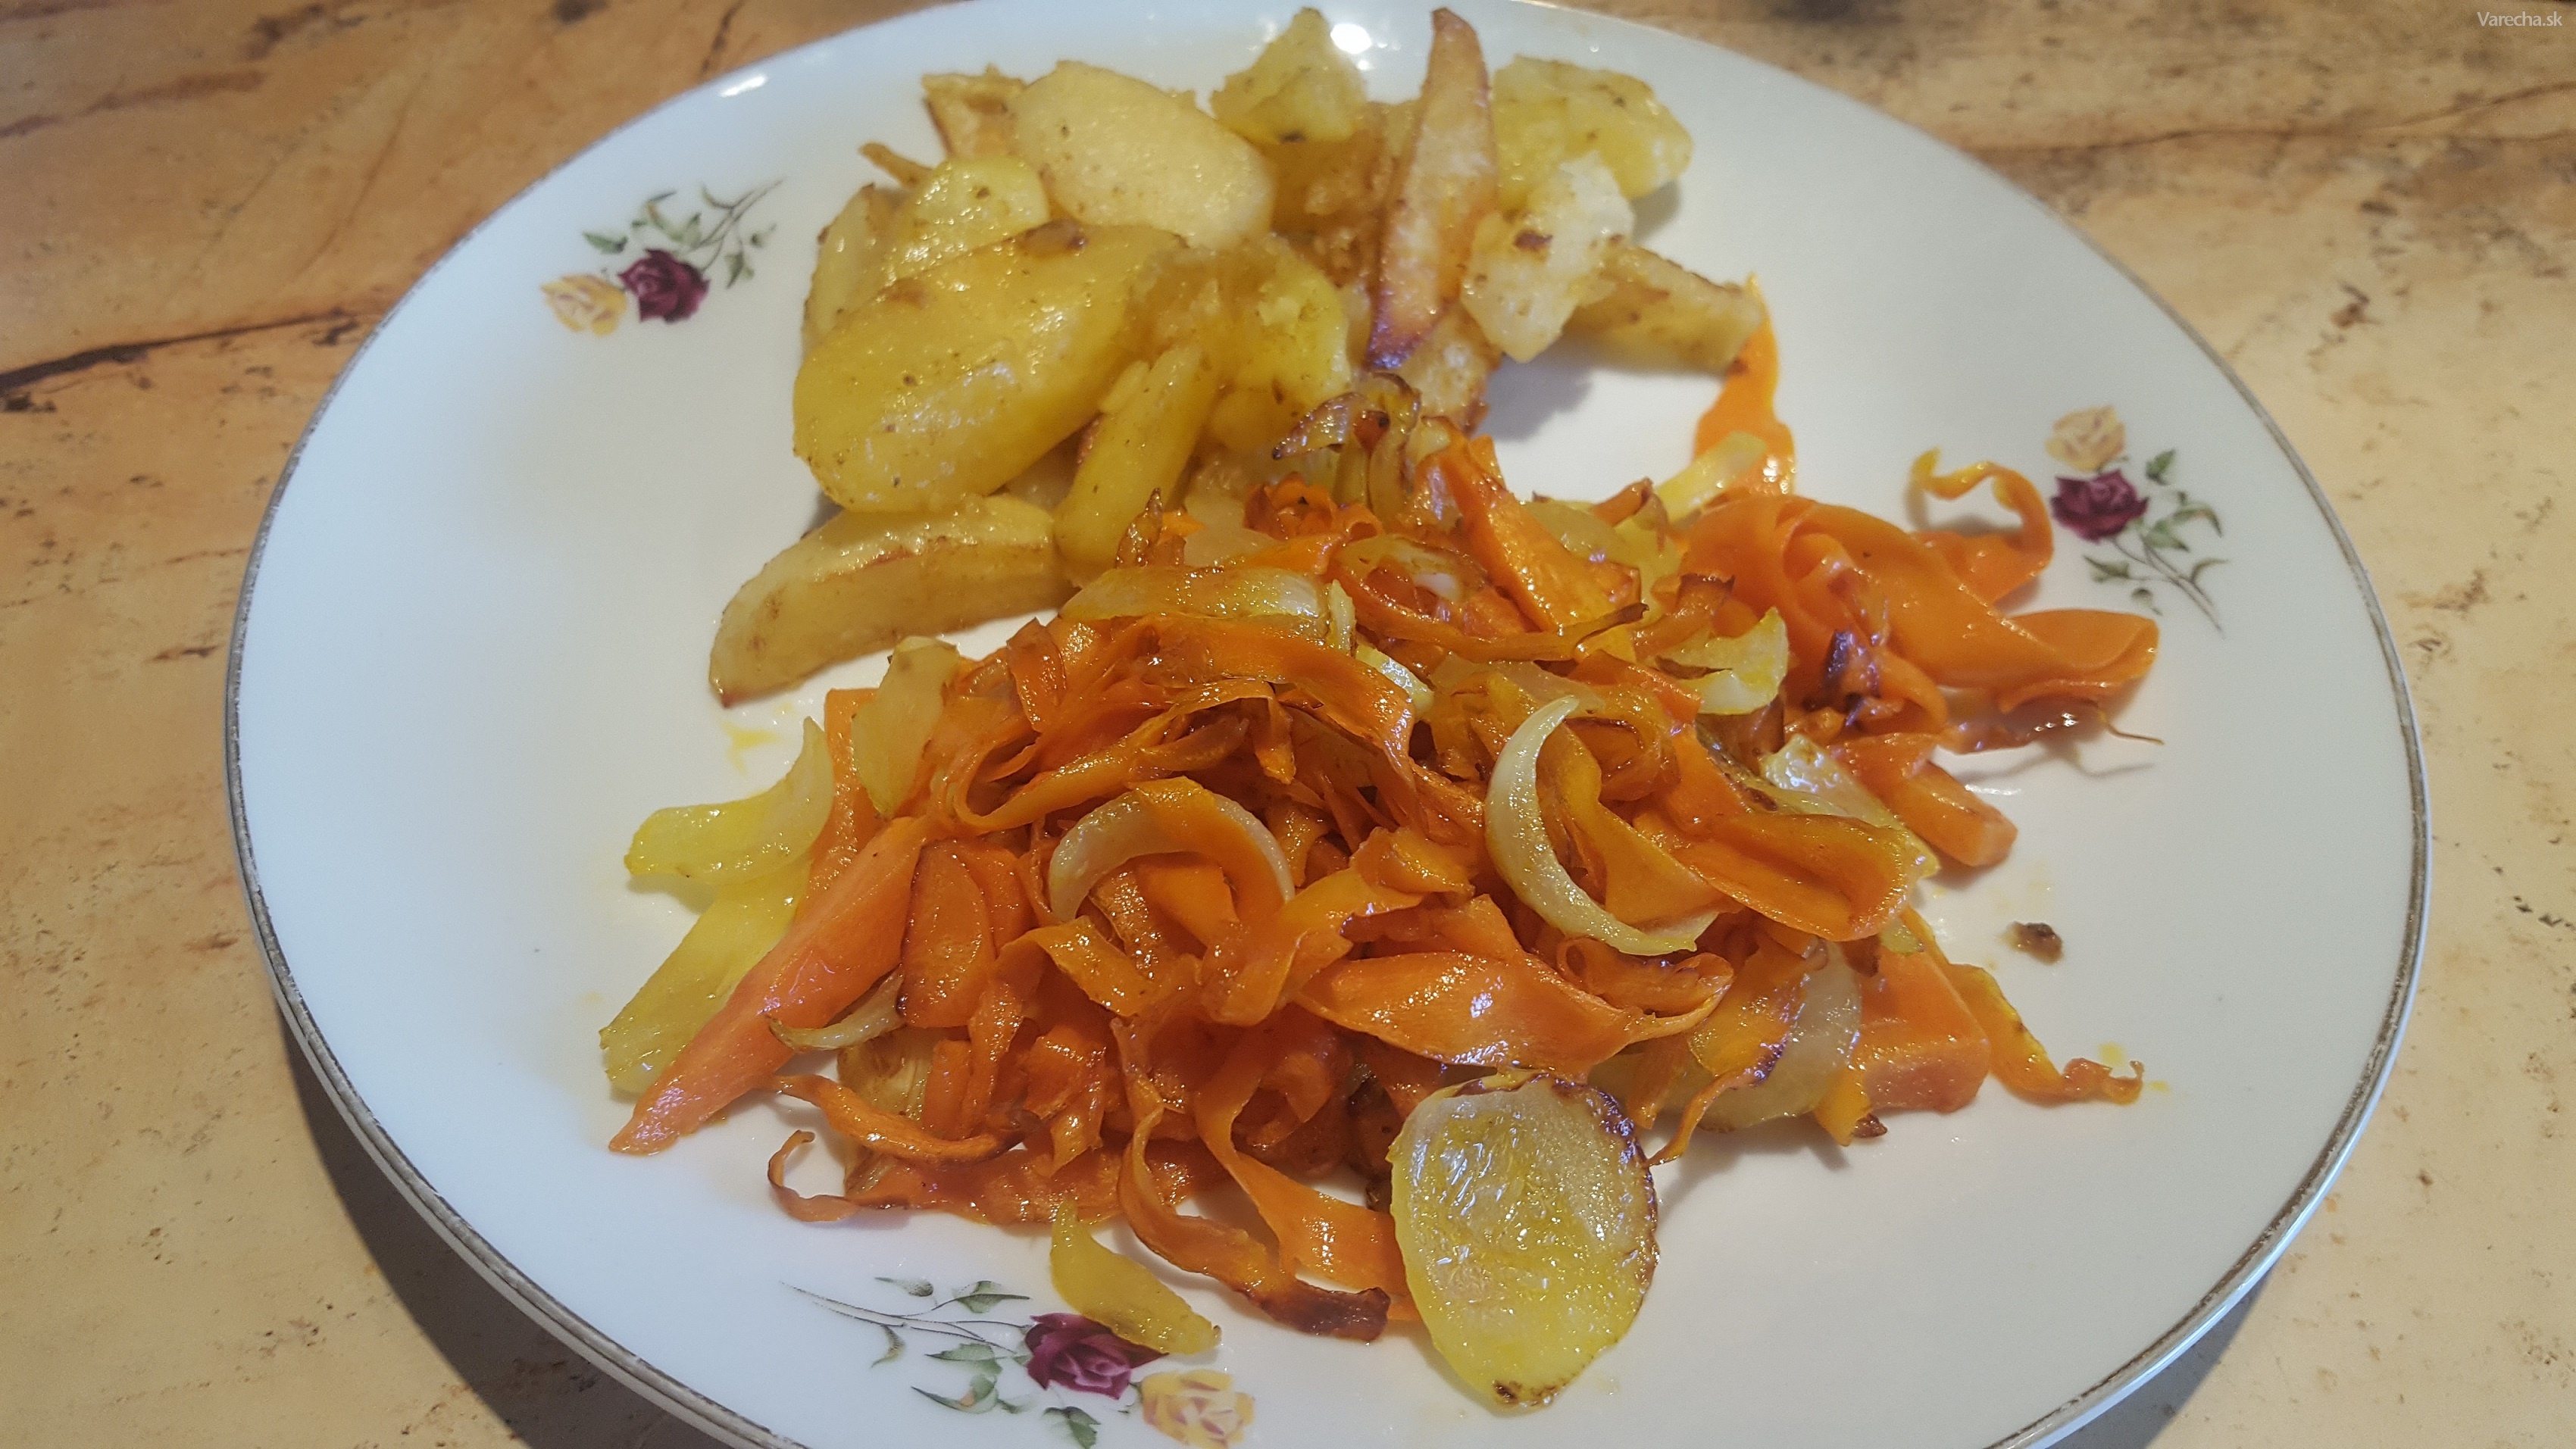 Rýchly obed - zemiaky s mrkvou a cibuľou (videorecept)